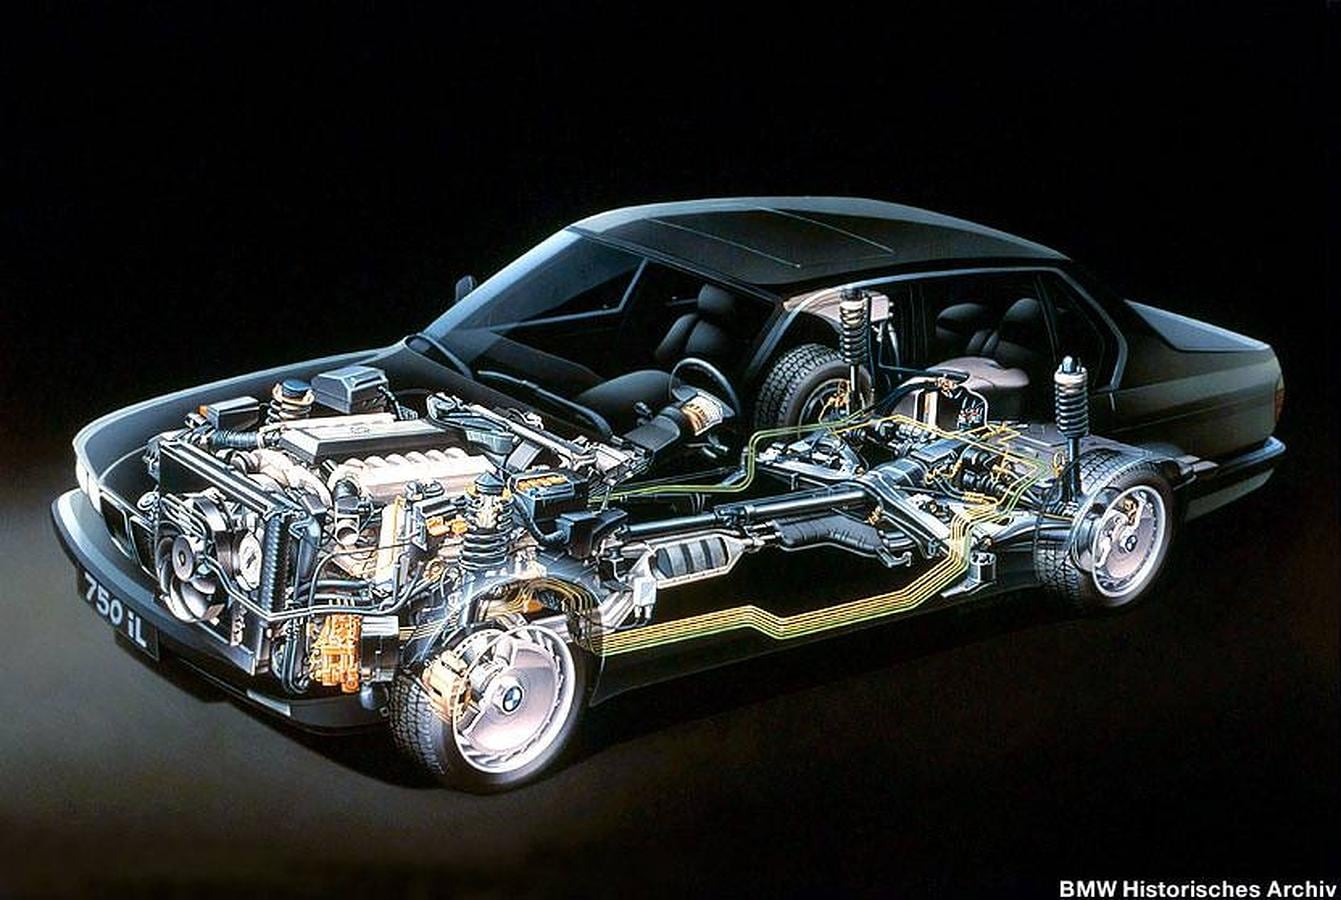 Inovaciones mecánicas dpara el BMW 750i, primer coche con motor V12, en 1987